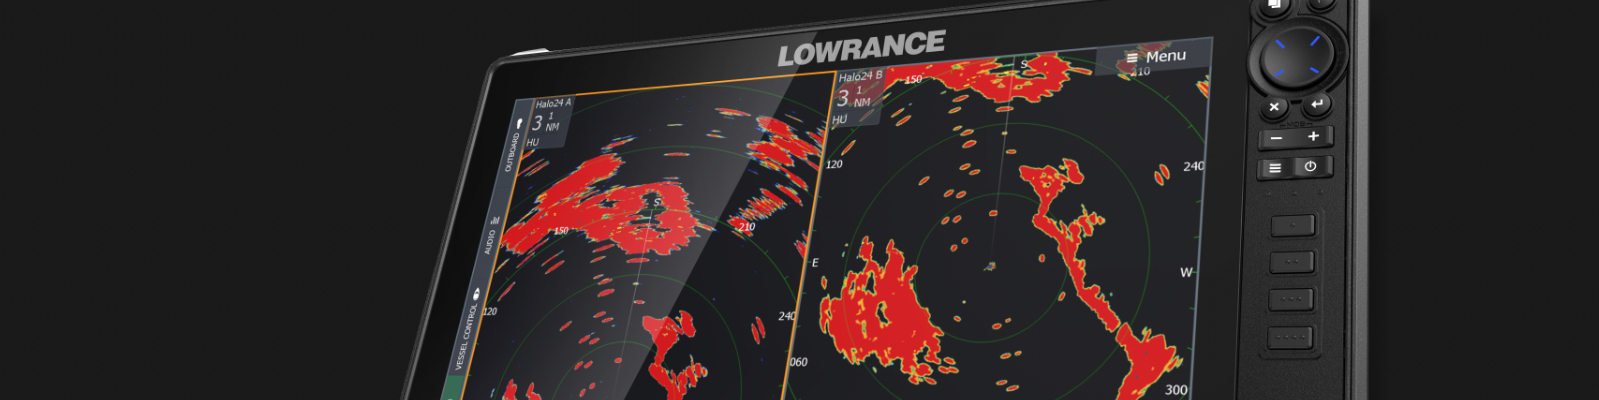 lowrance radar